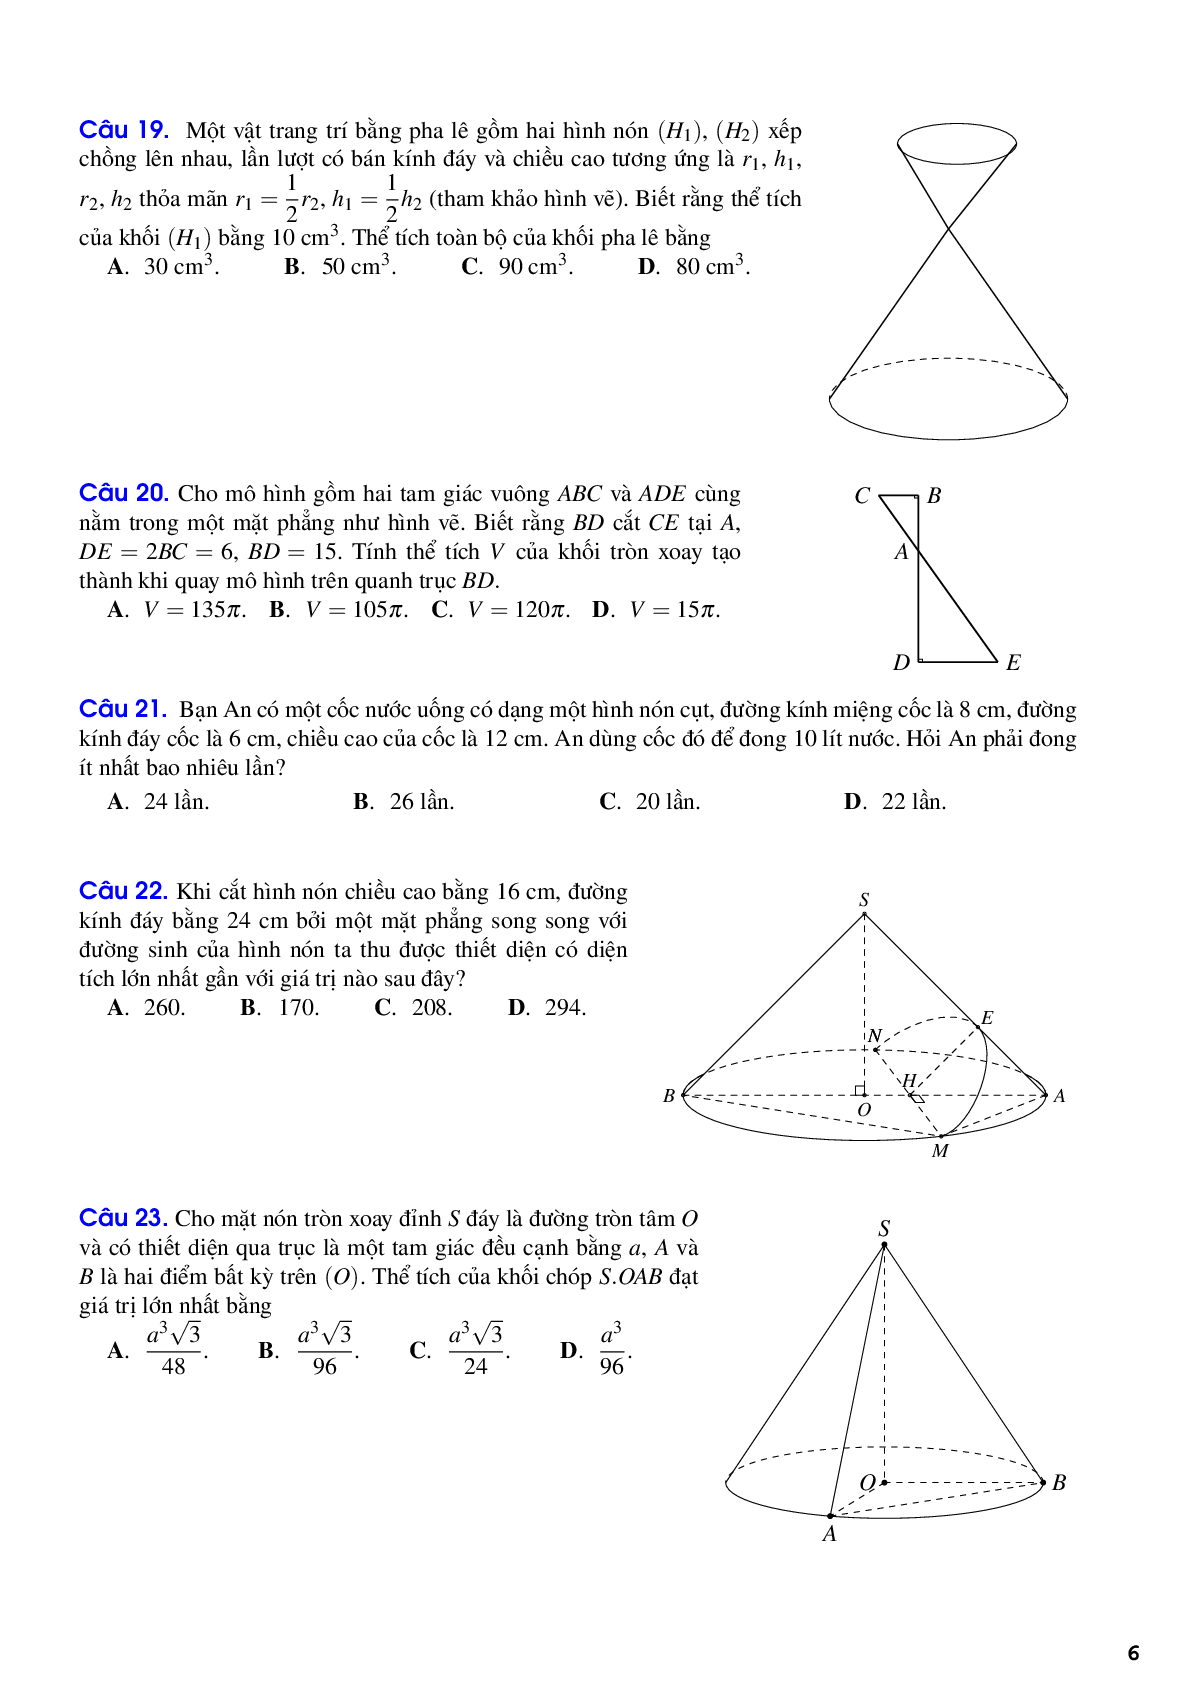 Lý thuyết và bái tập mặt nón, mặt trụ và mặt cầu có đáp án (trang 6)